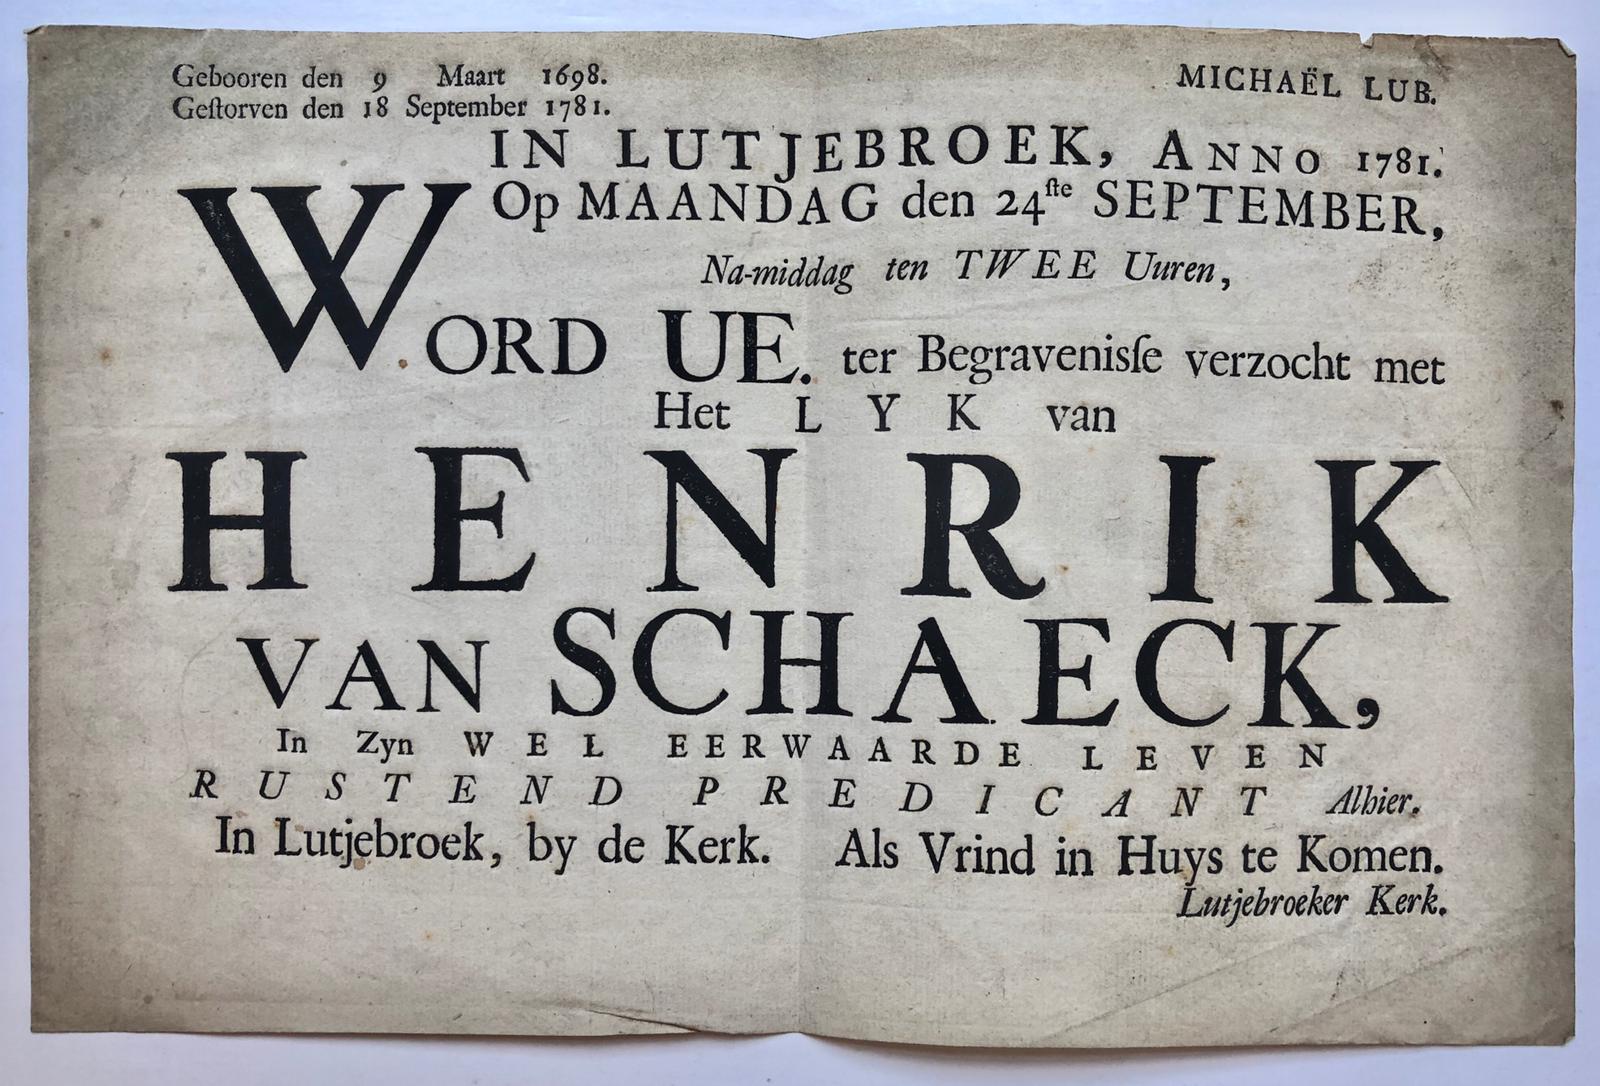 [Printed publication 1781] Uitnodiging tot het bijwonen van de begrafenis in de kerk van Lutjebroek op 24-9-1781 van Henrik van Schaeck, rustend predikant te Lutjebroek (9-3-1698 - 18-9-1781), 1 blad, folio, oblong, gedrukt.